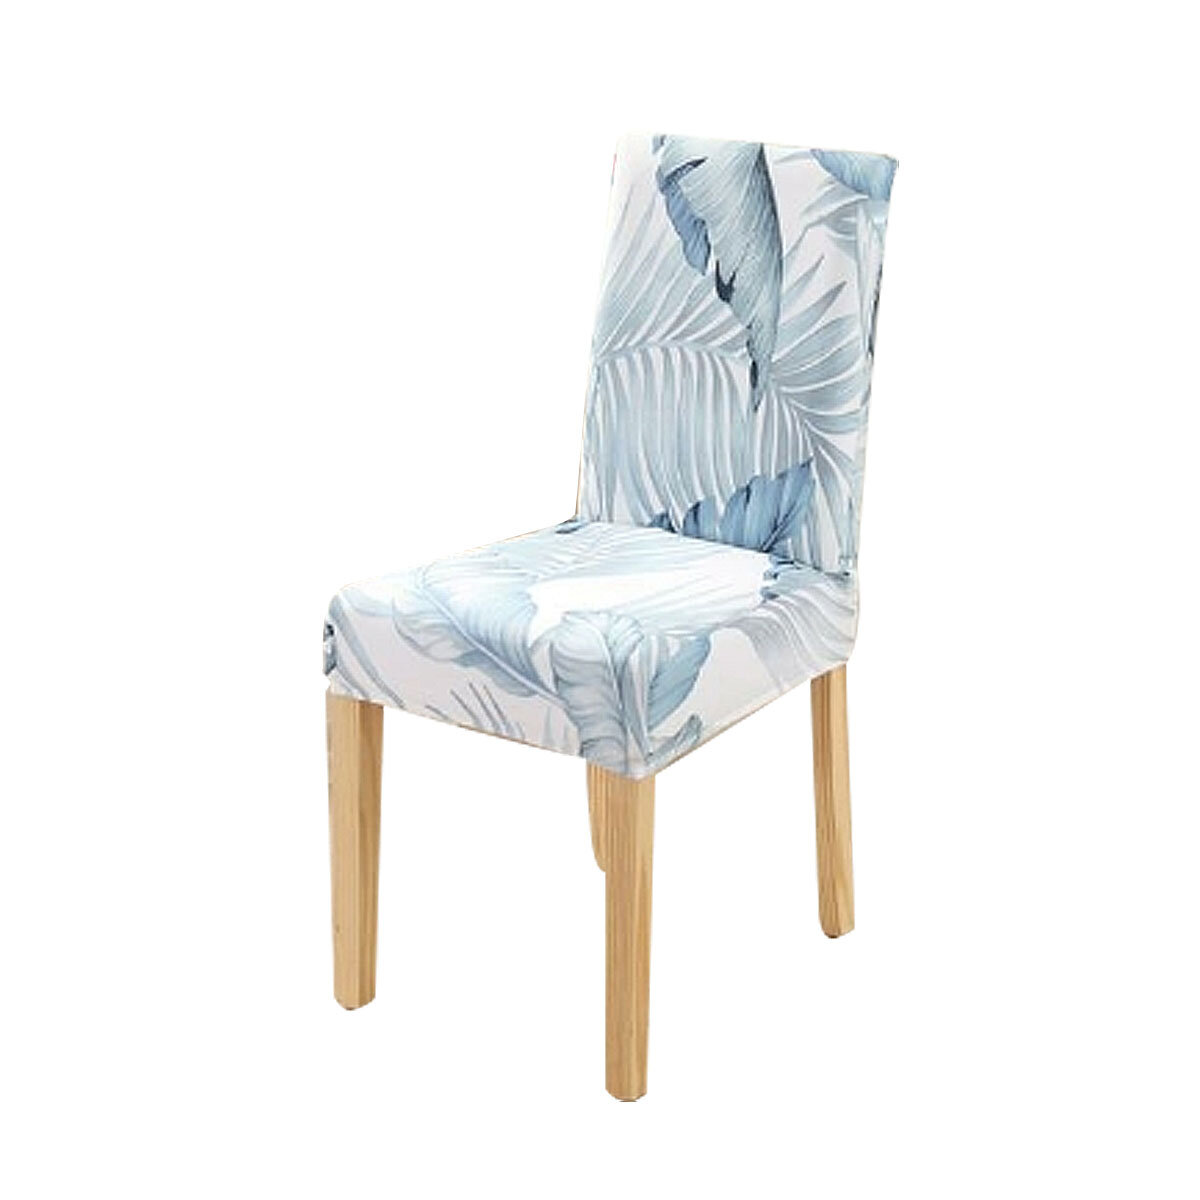 غطاء كرسي عالمي غطاء كرسي لغرفة الطعام / غرفة المعيشة / مأدبة / حفلة